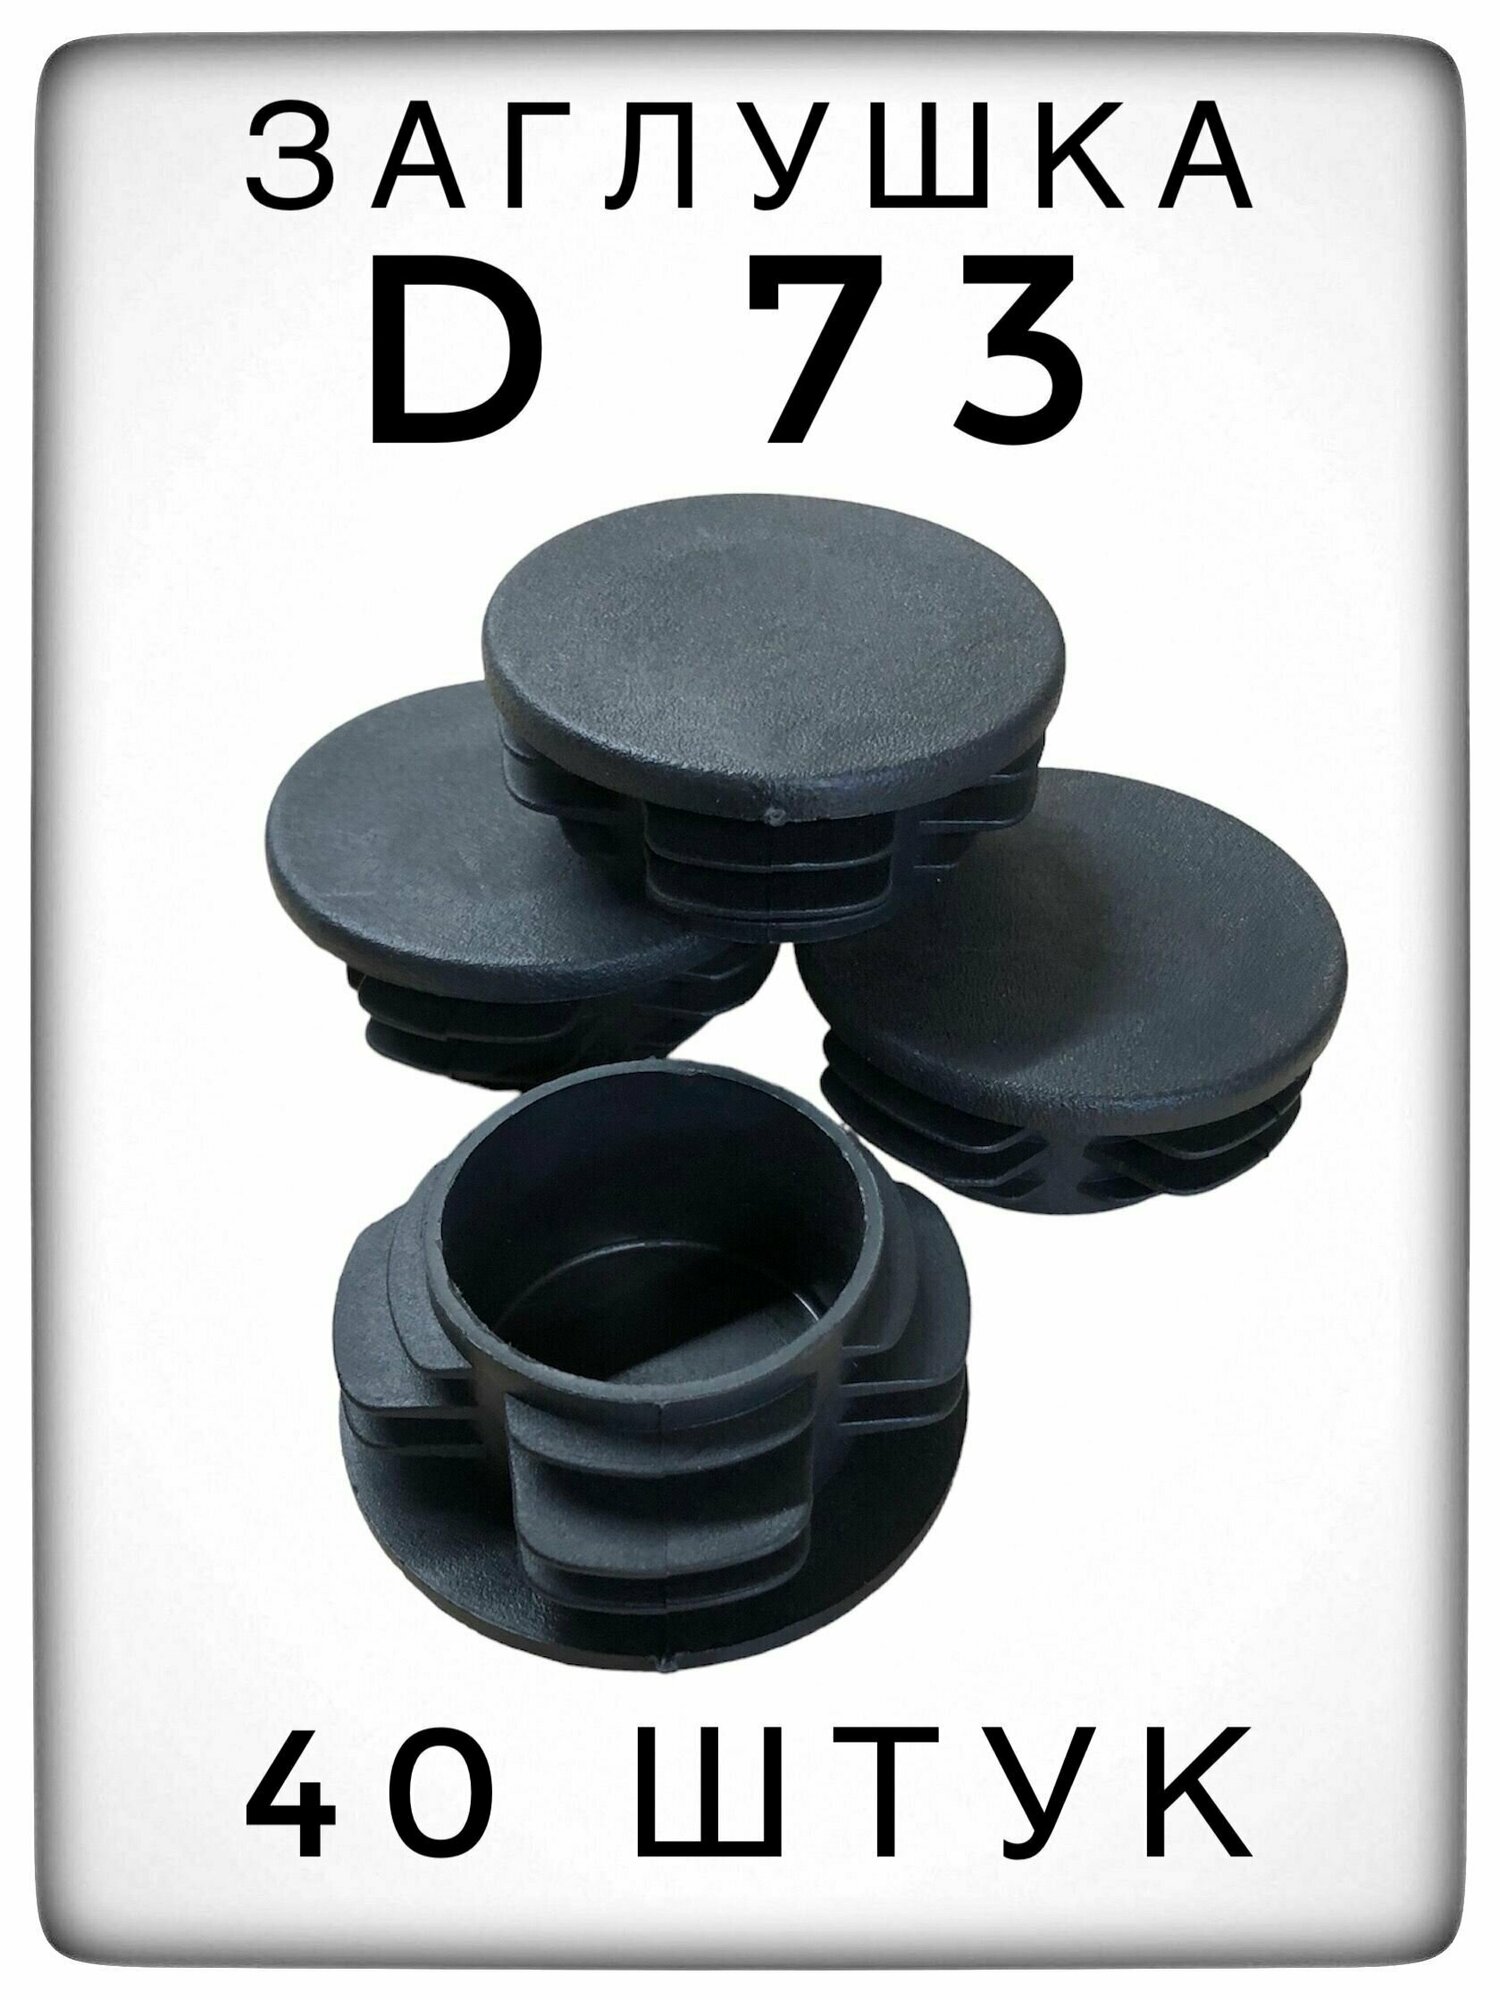 Заглушка Д73 (40 штук) пластиковая для металлической трубы НКТ